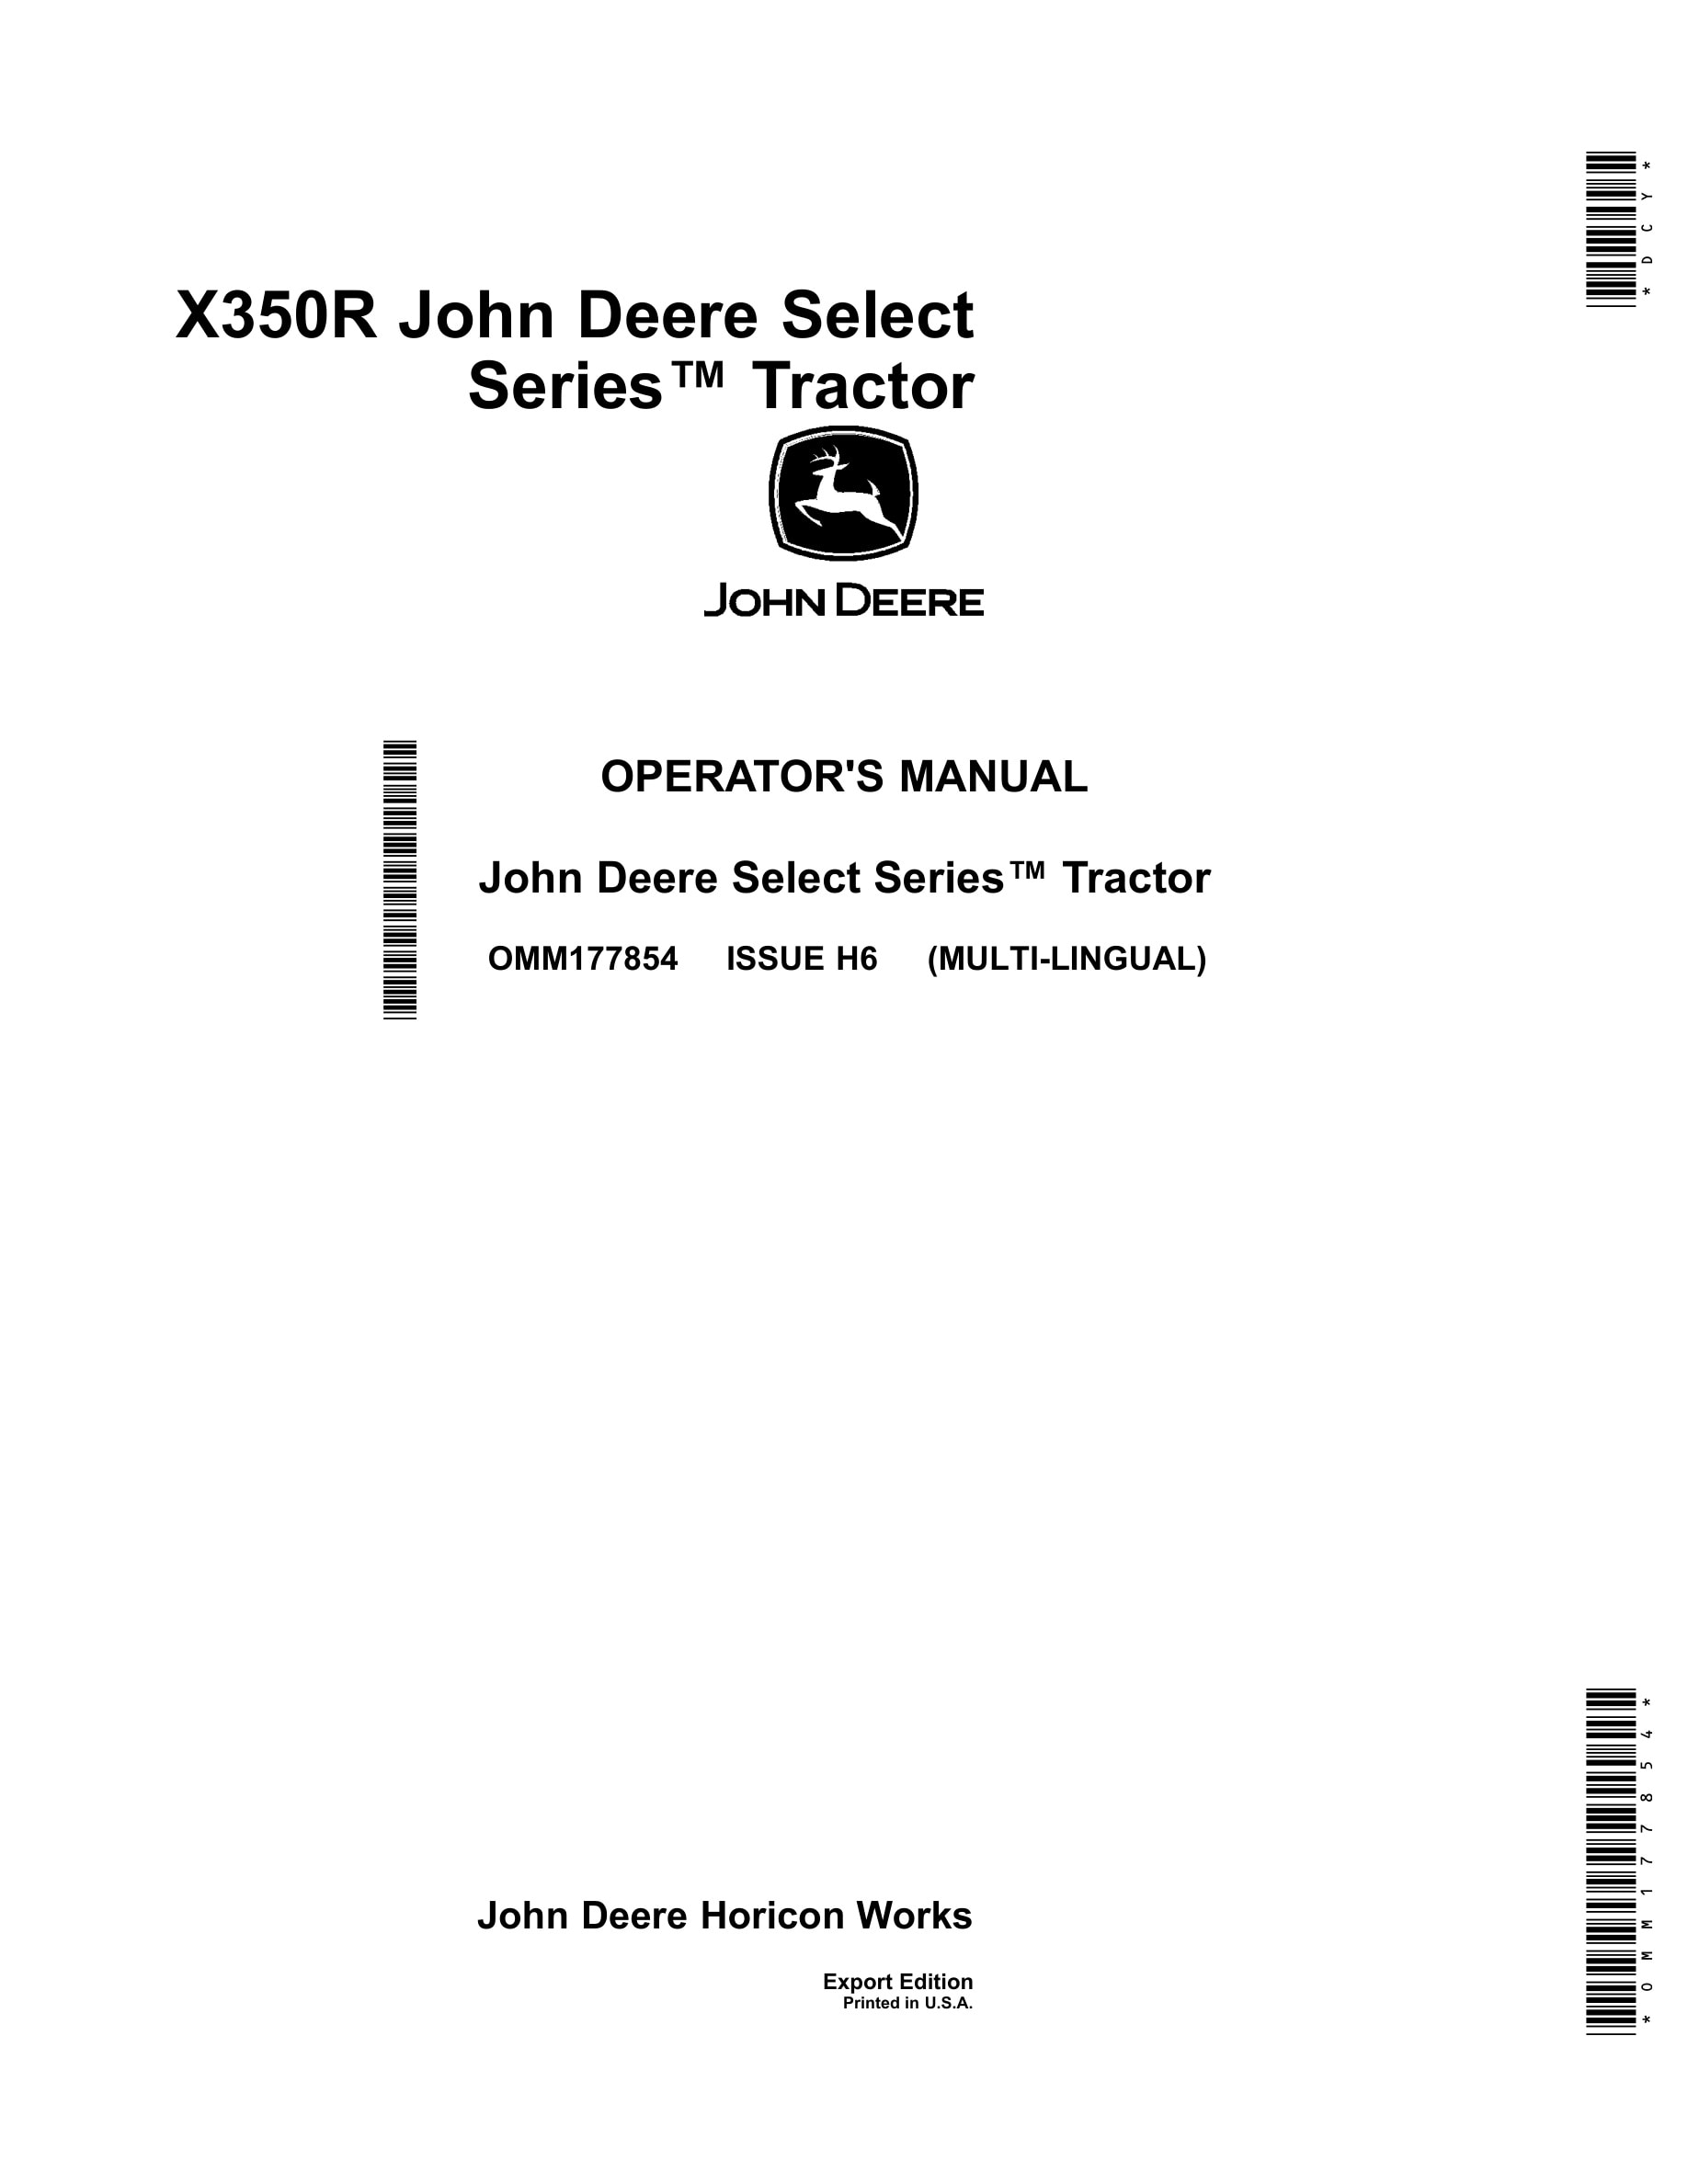 John Deere X350r Select Series Tractors Operator Manual OMM177854-1